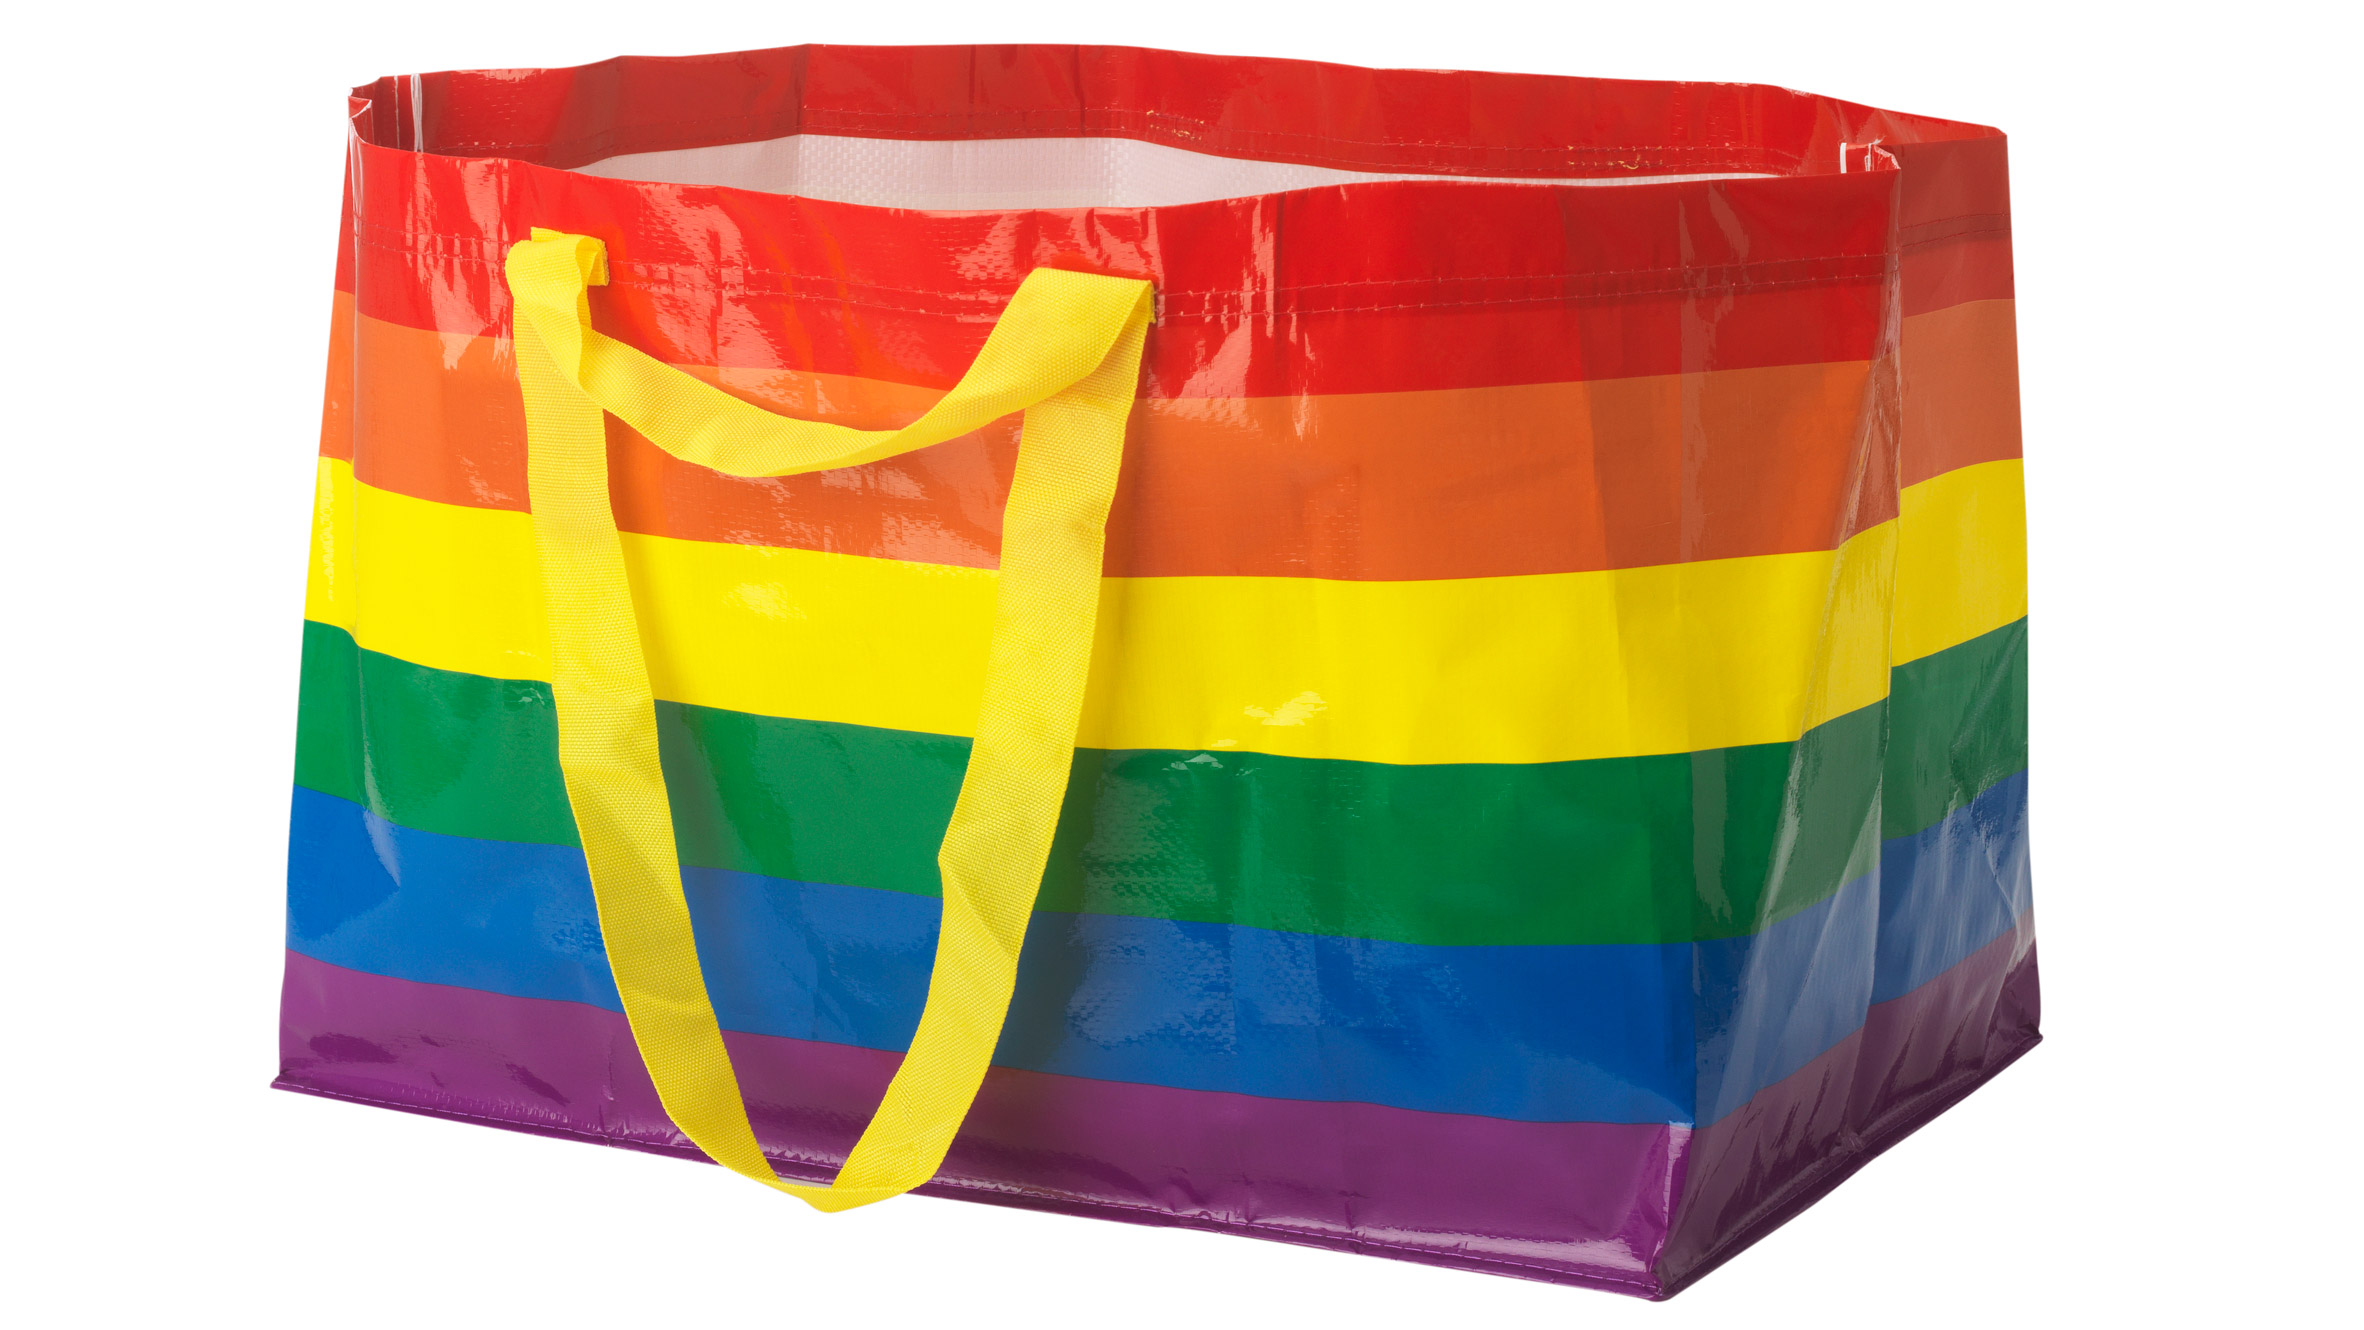 Gay Tote Bag Pride Bag Gay Pride Bag Tote Bag Gay Pride 